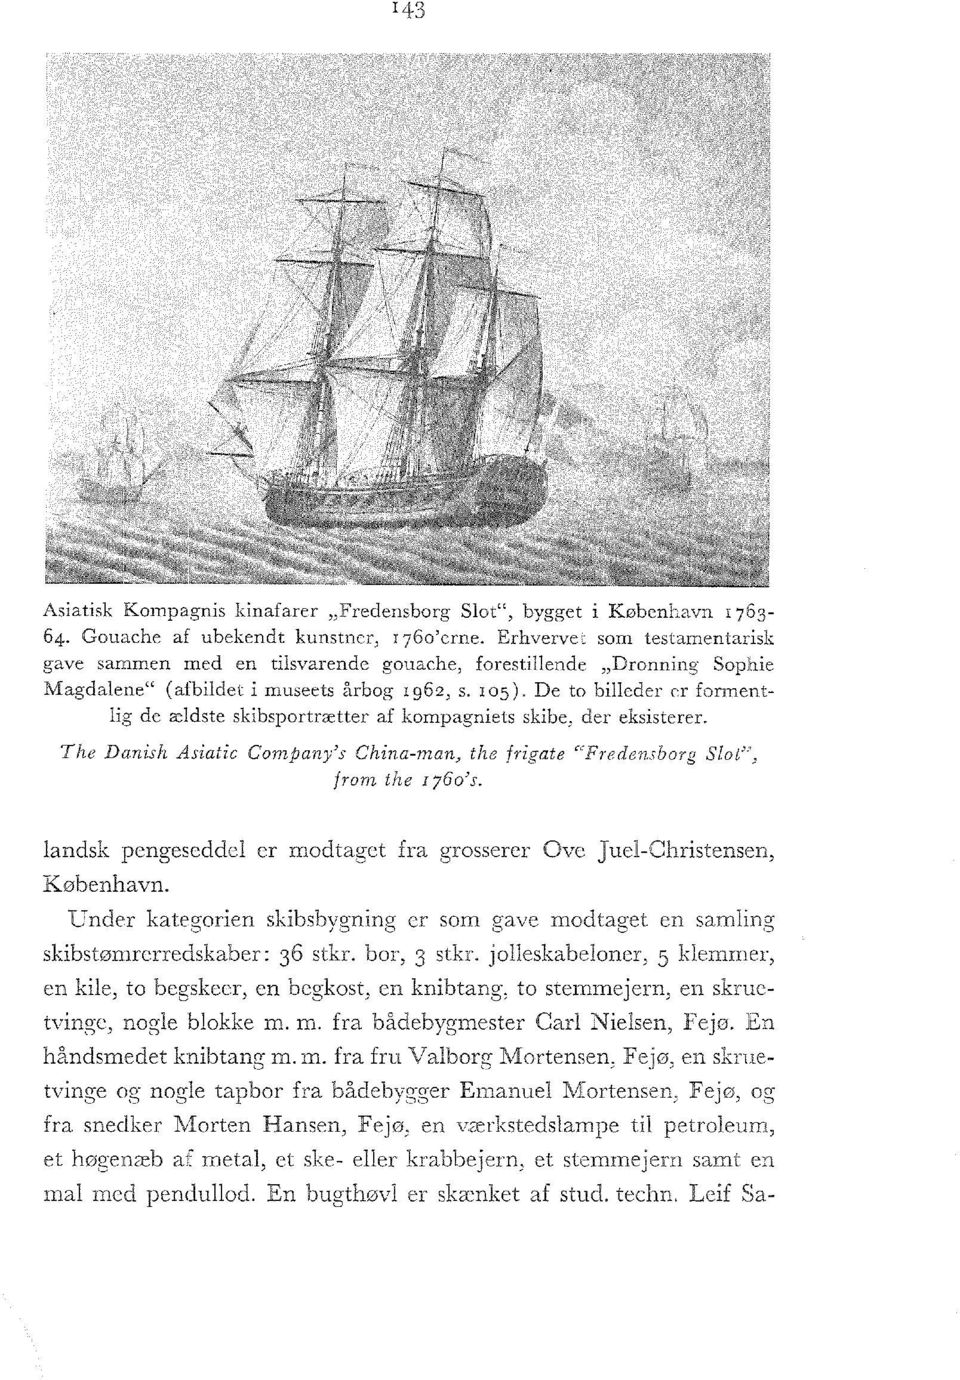 De to billeder er formentlig de ældste skibsportrætter af kompagniets skibe, der eksisterer. The Danish Asiatic Company's China-man, the frigate "Fredensborg Slot", from the 1760's.